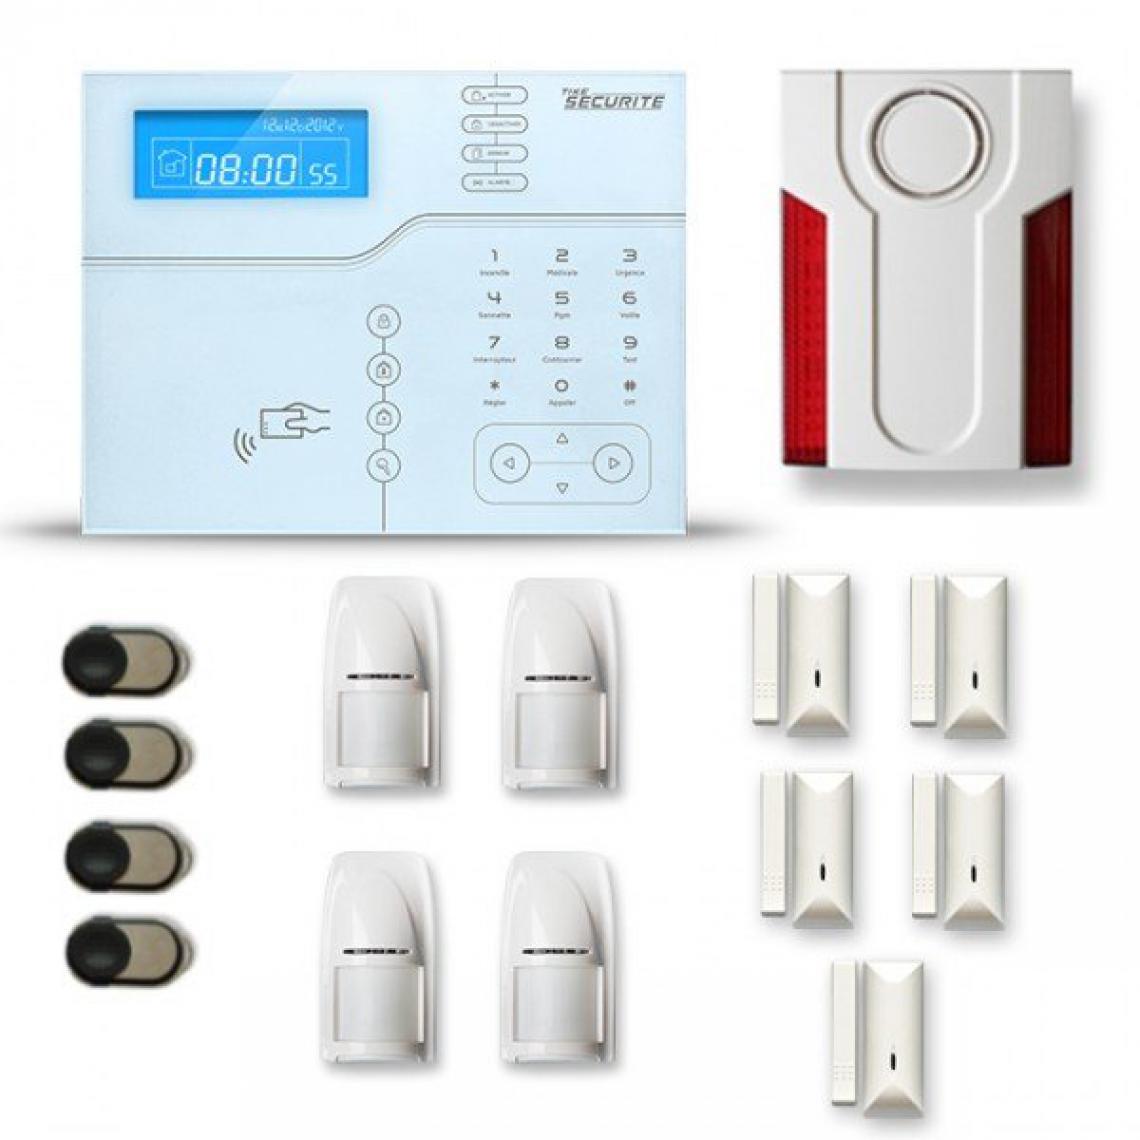 Tike Securite - Alarme maison sans fil SHB24 GSM/IP avec option GSM incluse - Alarme connectée